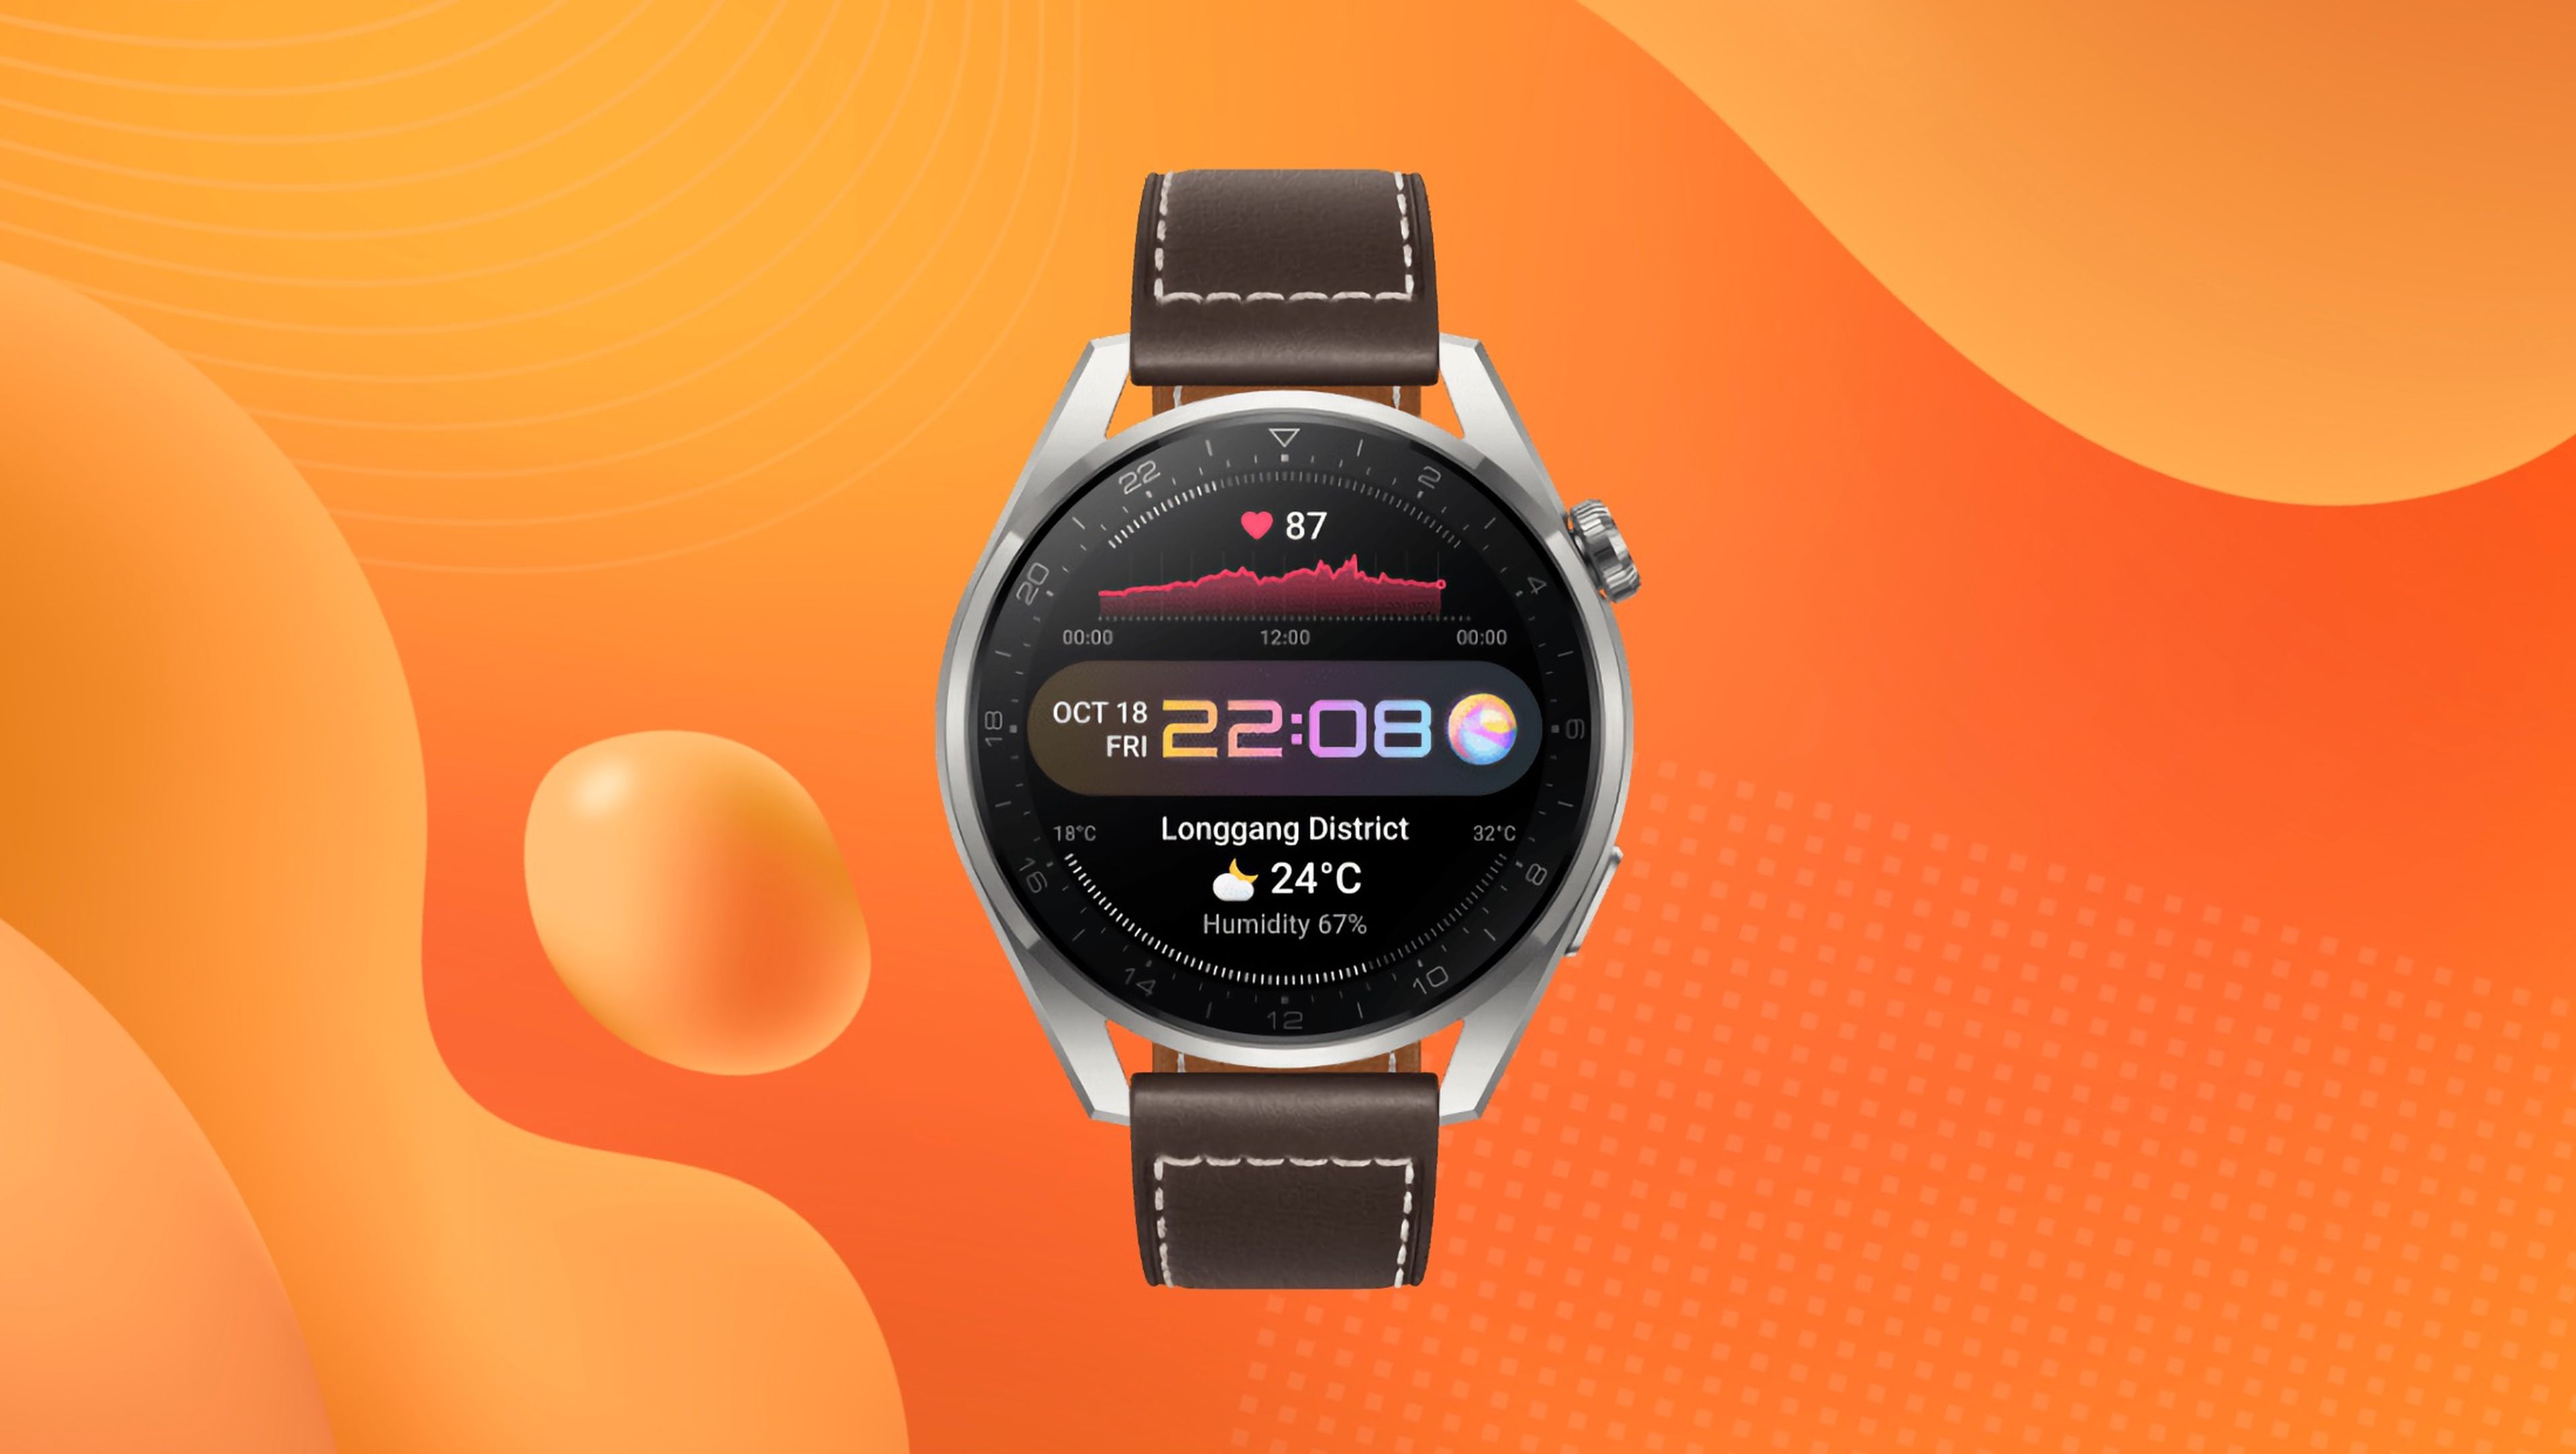 Watch 3 Pro, uno de los smartwatchs de Huawei con un gran descuento